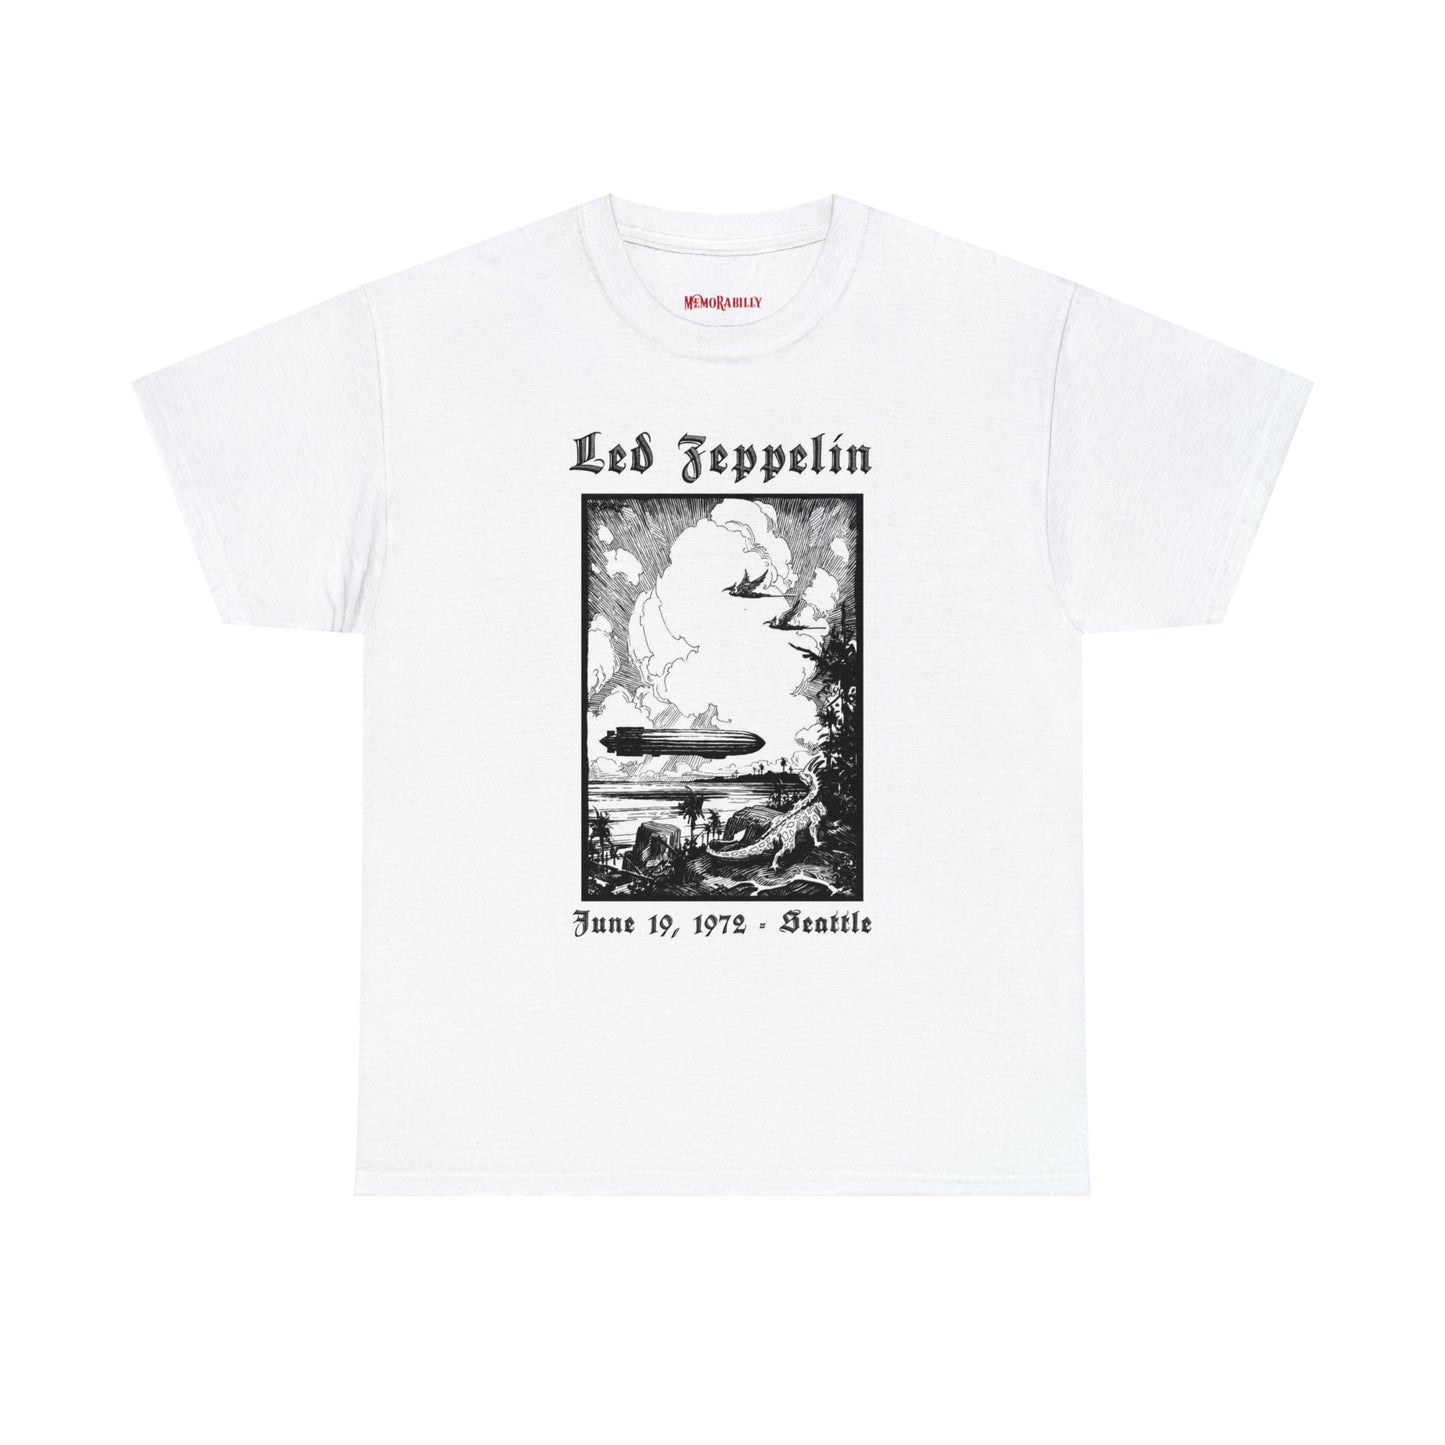 Led Zeppelin | T-shirt | Music | Unisex